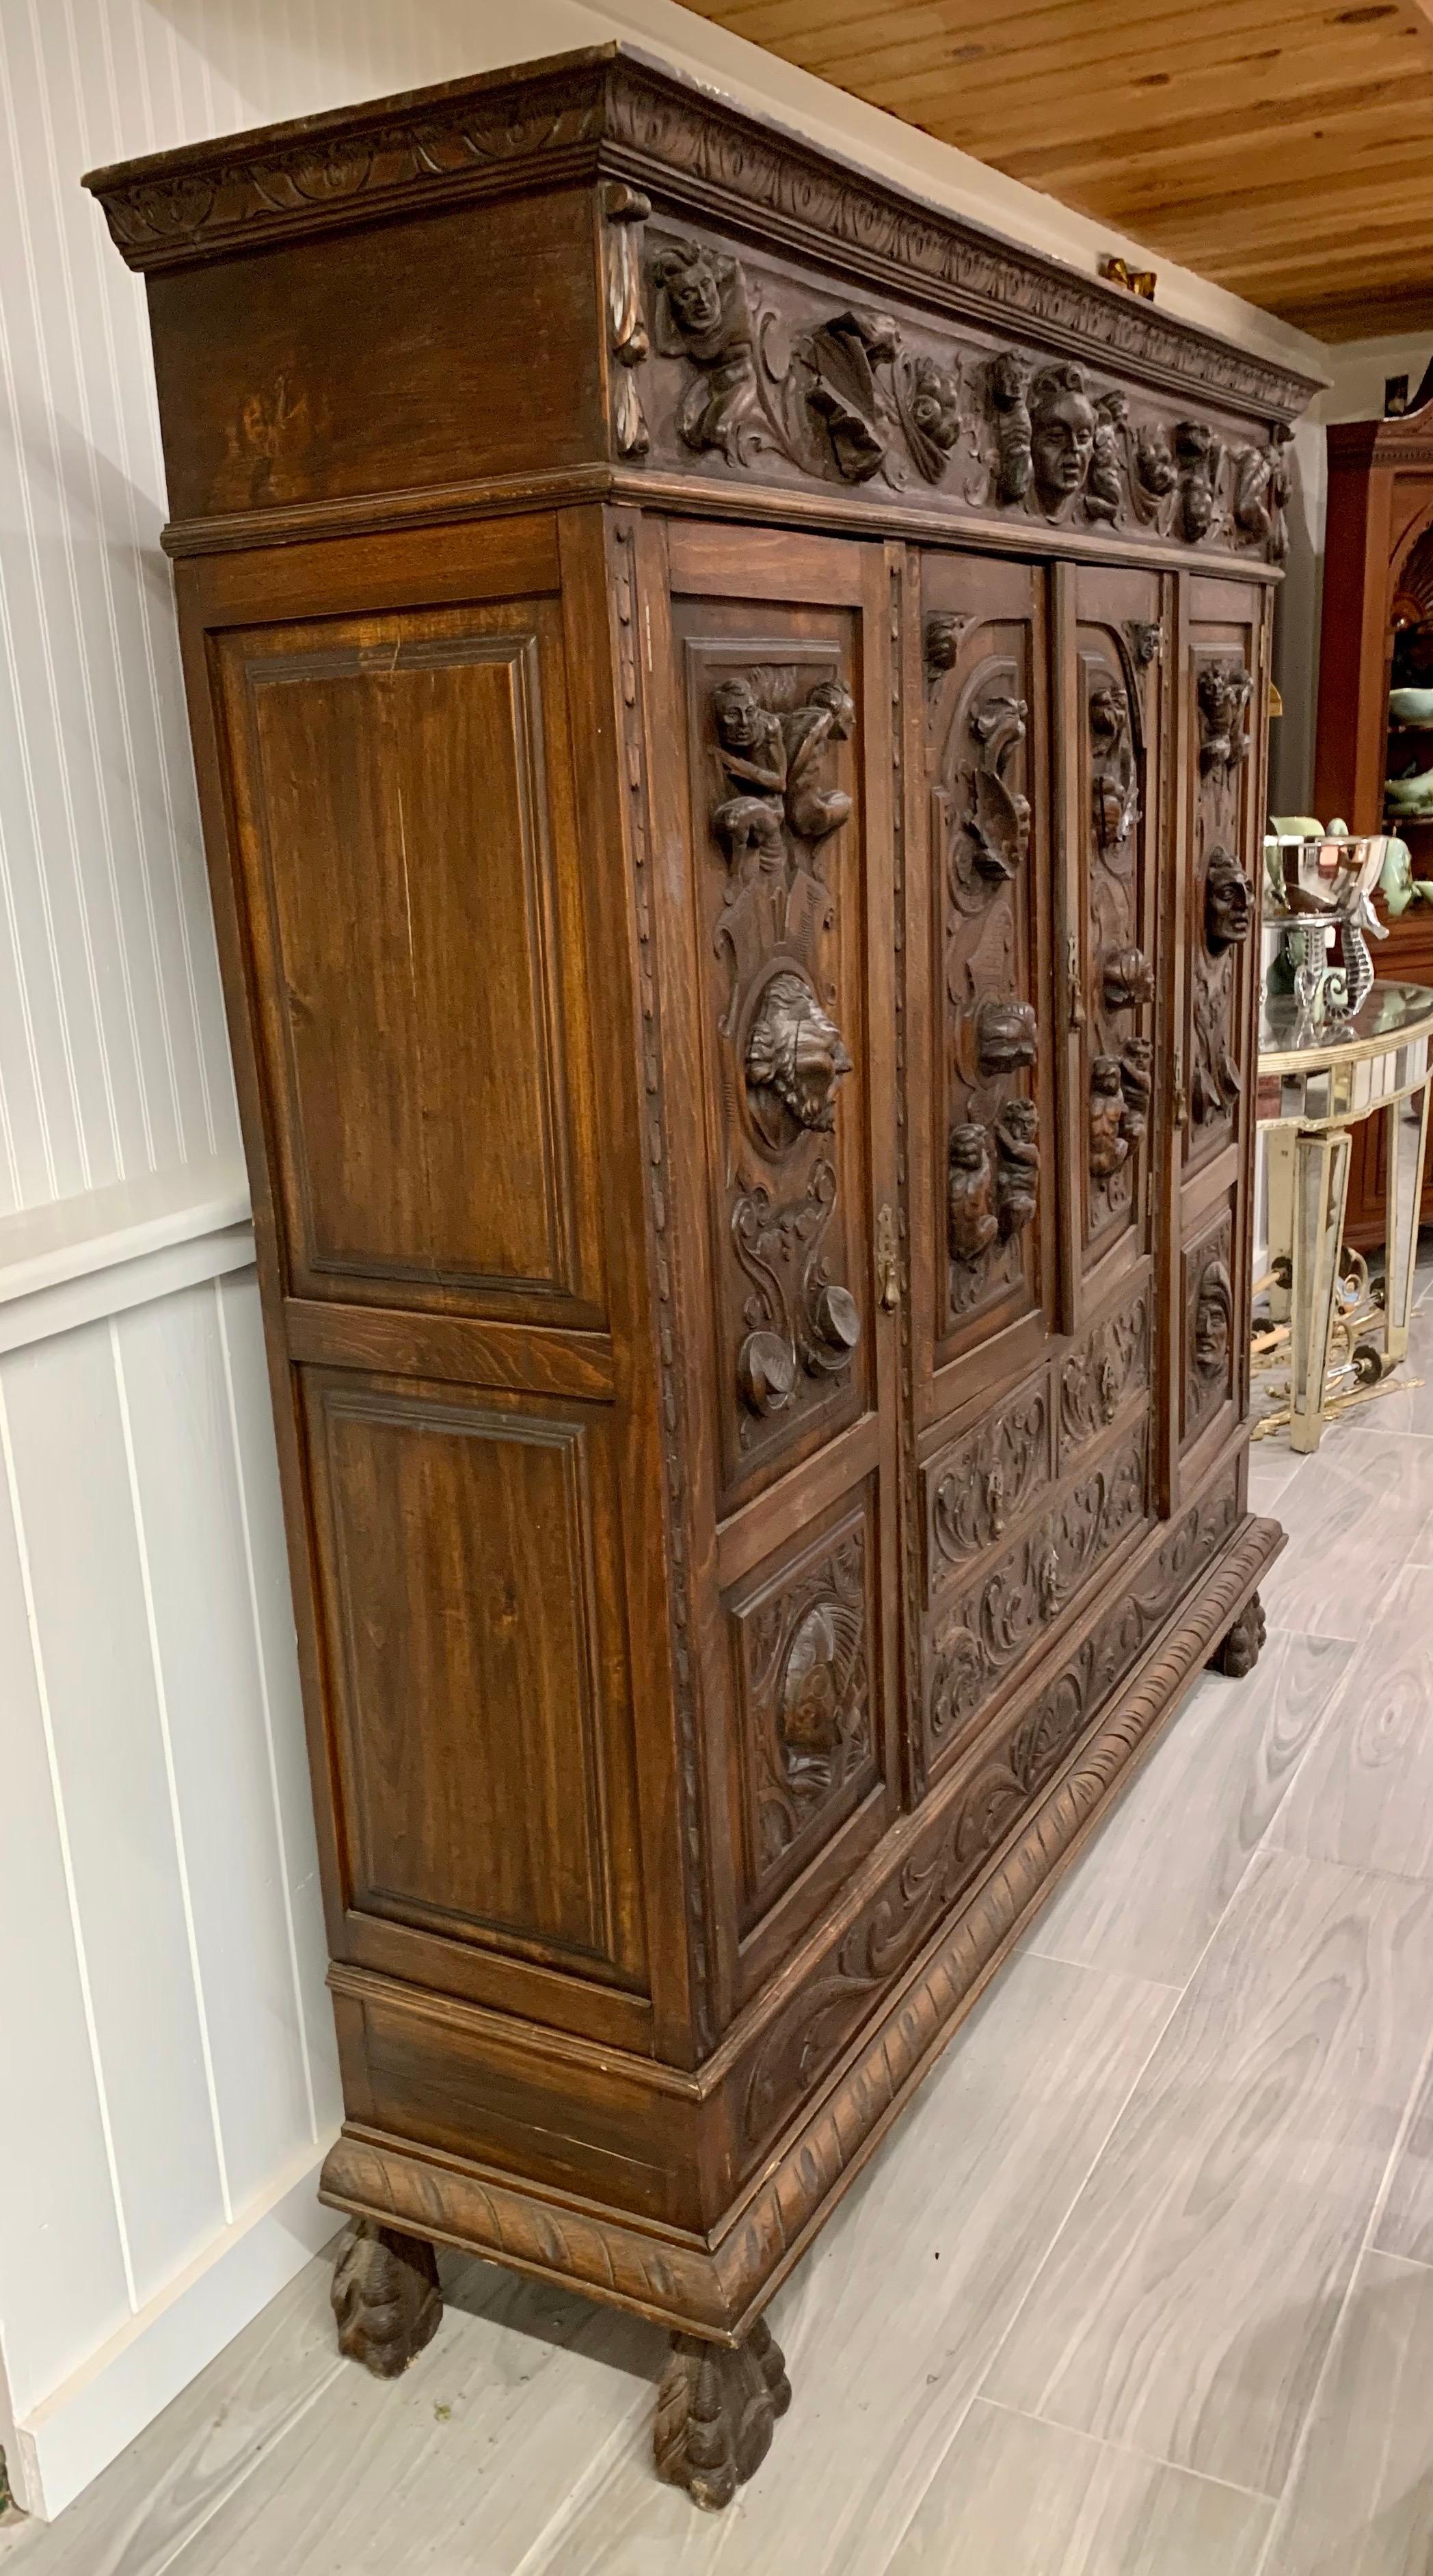 Magnifique armoire ancienne française avec d'incroyables détails en bois de noyer noir sculpté qui sont à couper le souffle. Aujourd'hui plus que jamais, le cœur est à la maison.